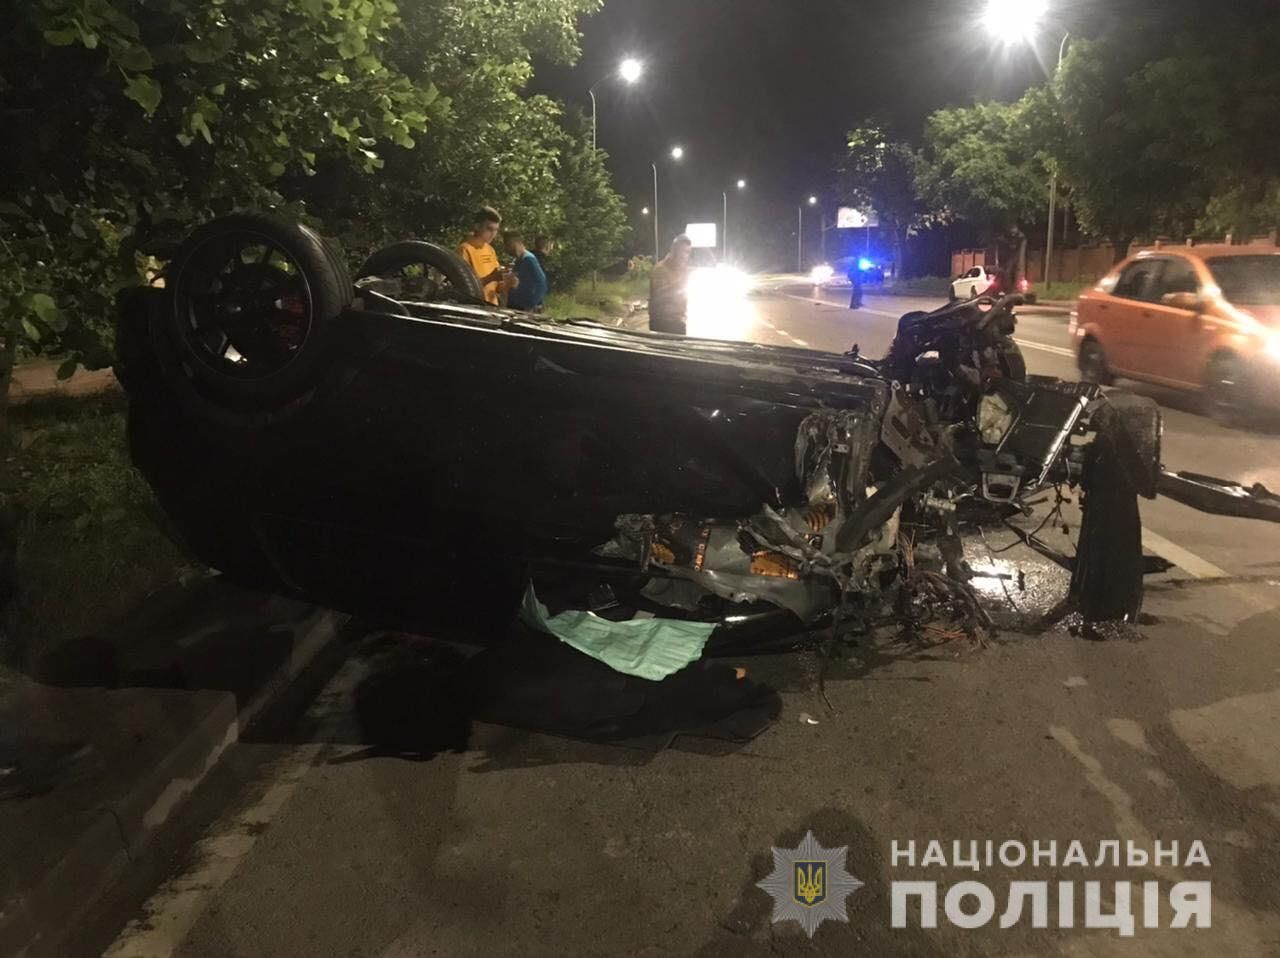 Авто разлетелось вдребезги: во Львове водитель вызвал масштабную ДТП и скрылся - фото и видео 